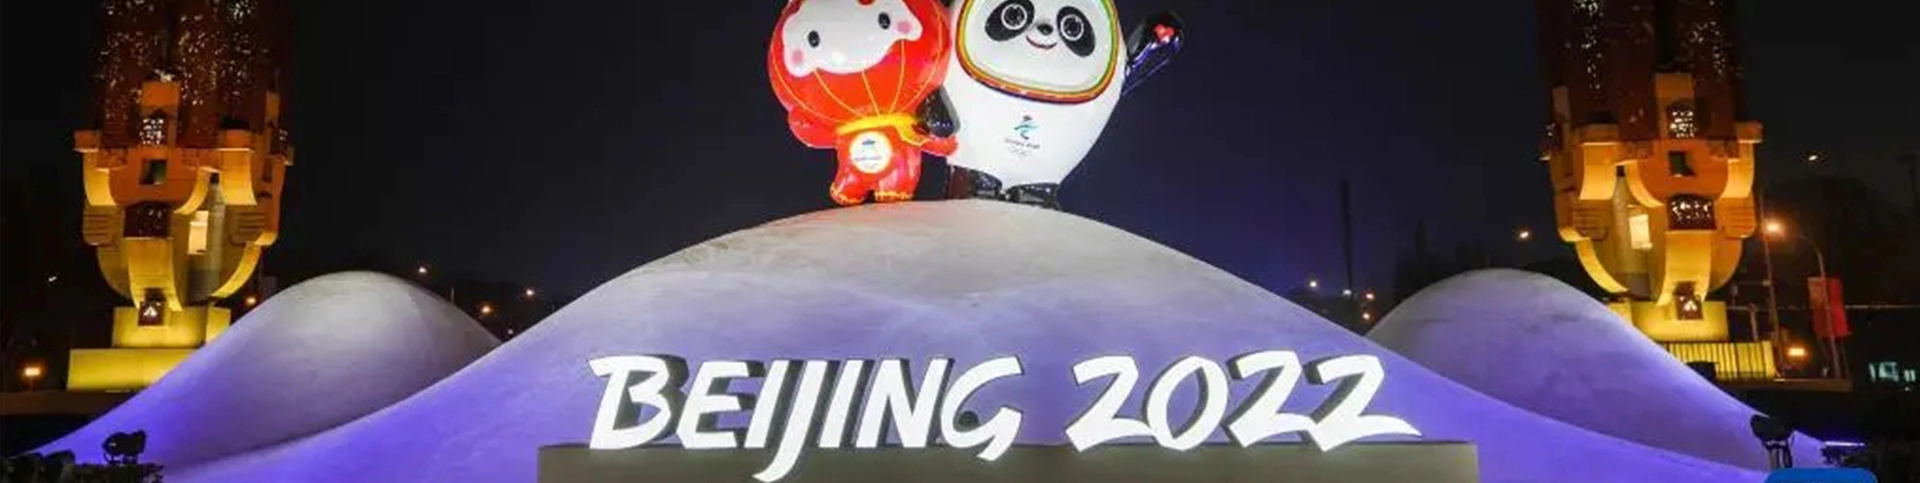 El mejor sistema de conferencias para los Juegos Olímpicos 2022 Invierno de Beijing